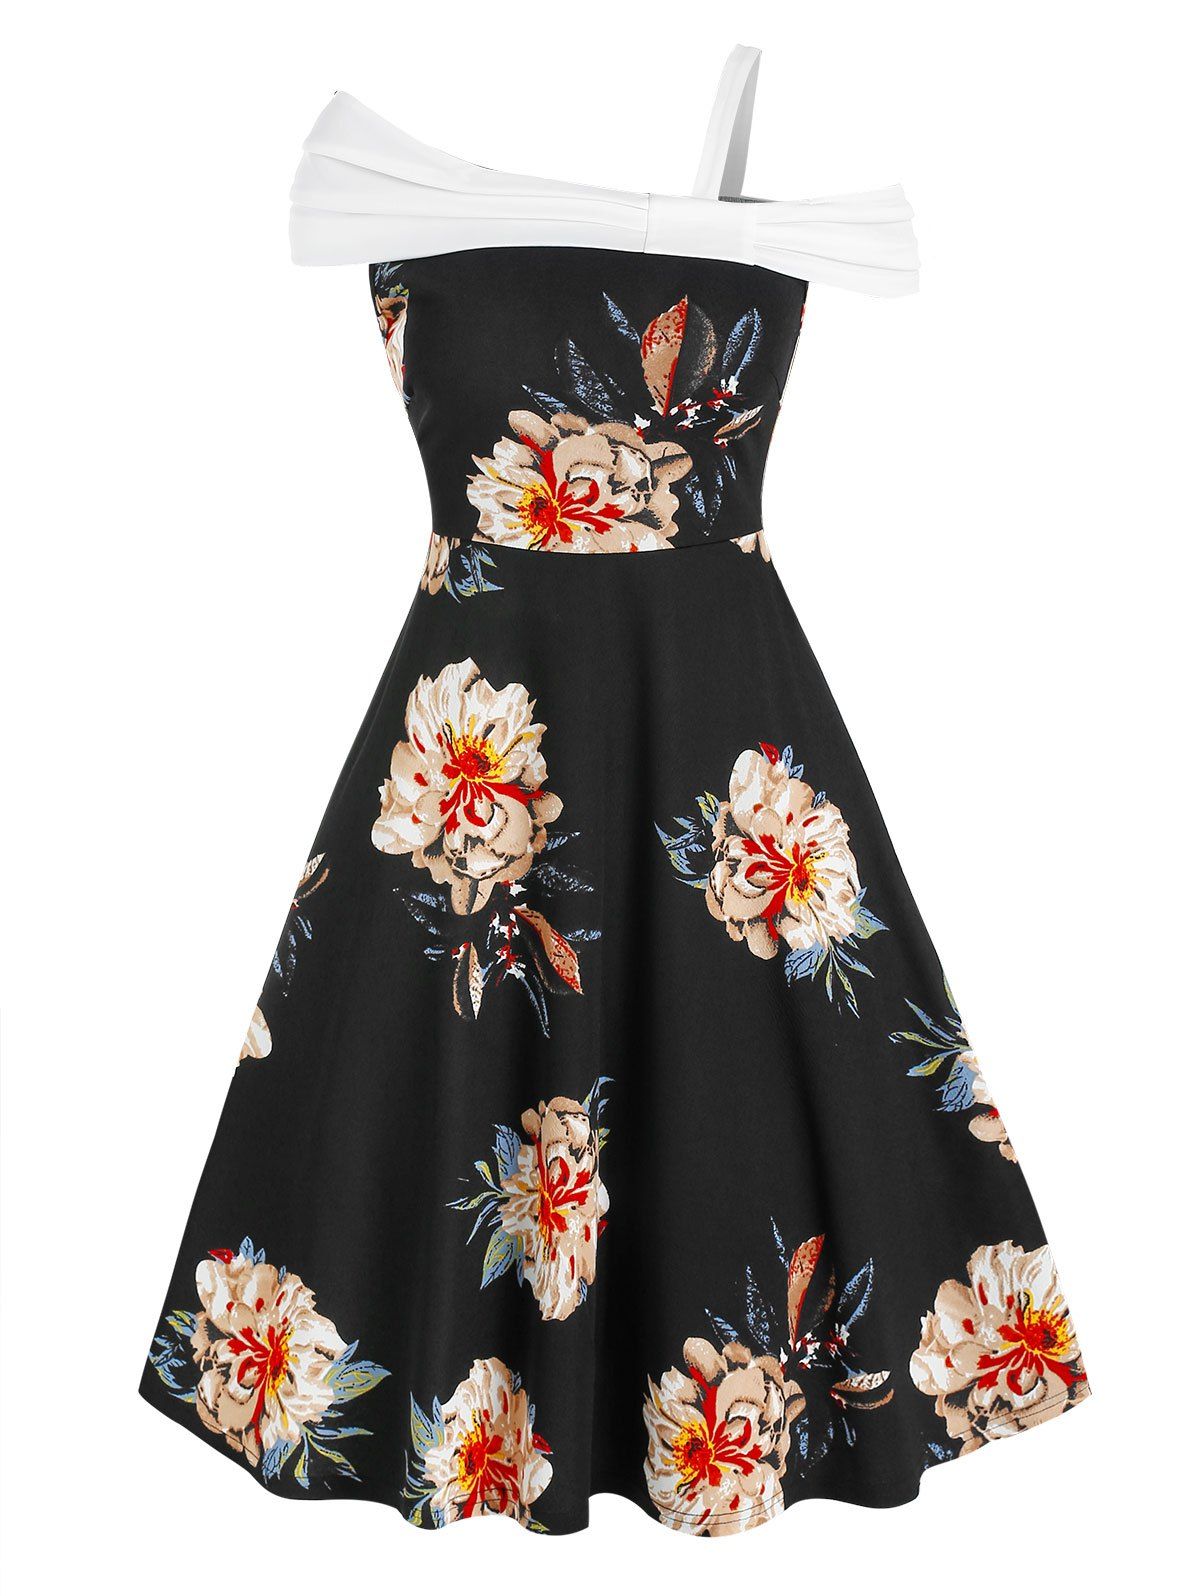 Floral Print Skew Neck Knee Length Dress - BLACK L